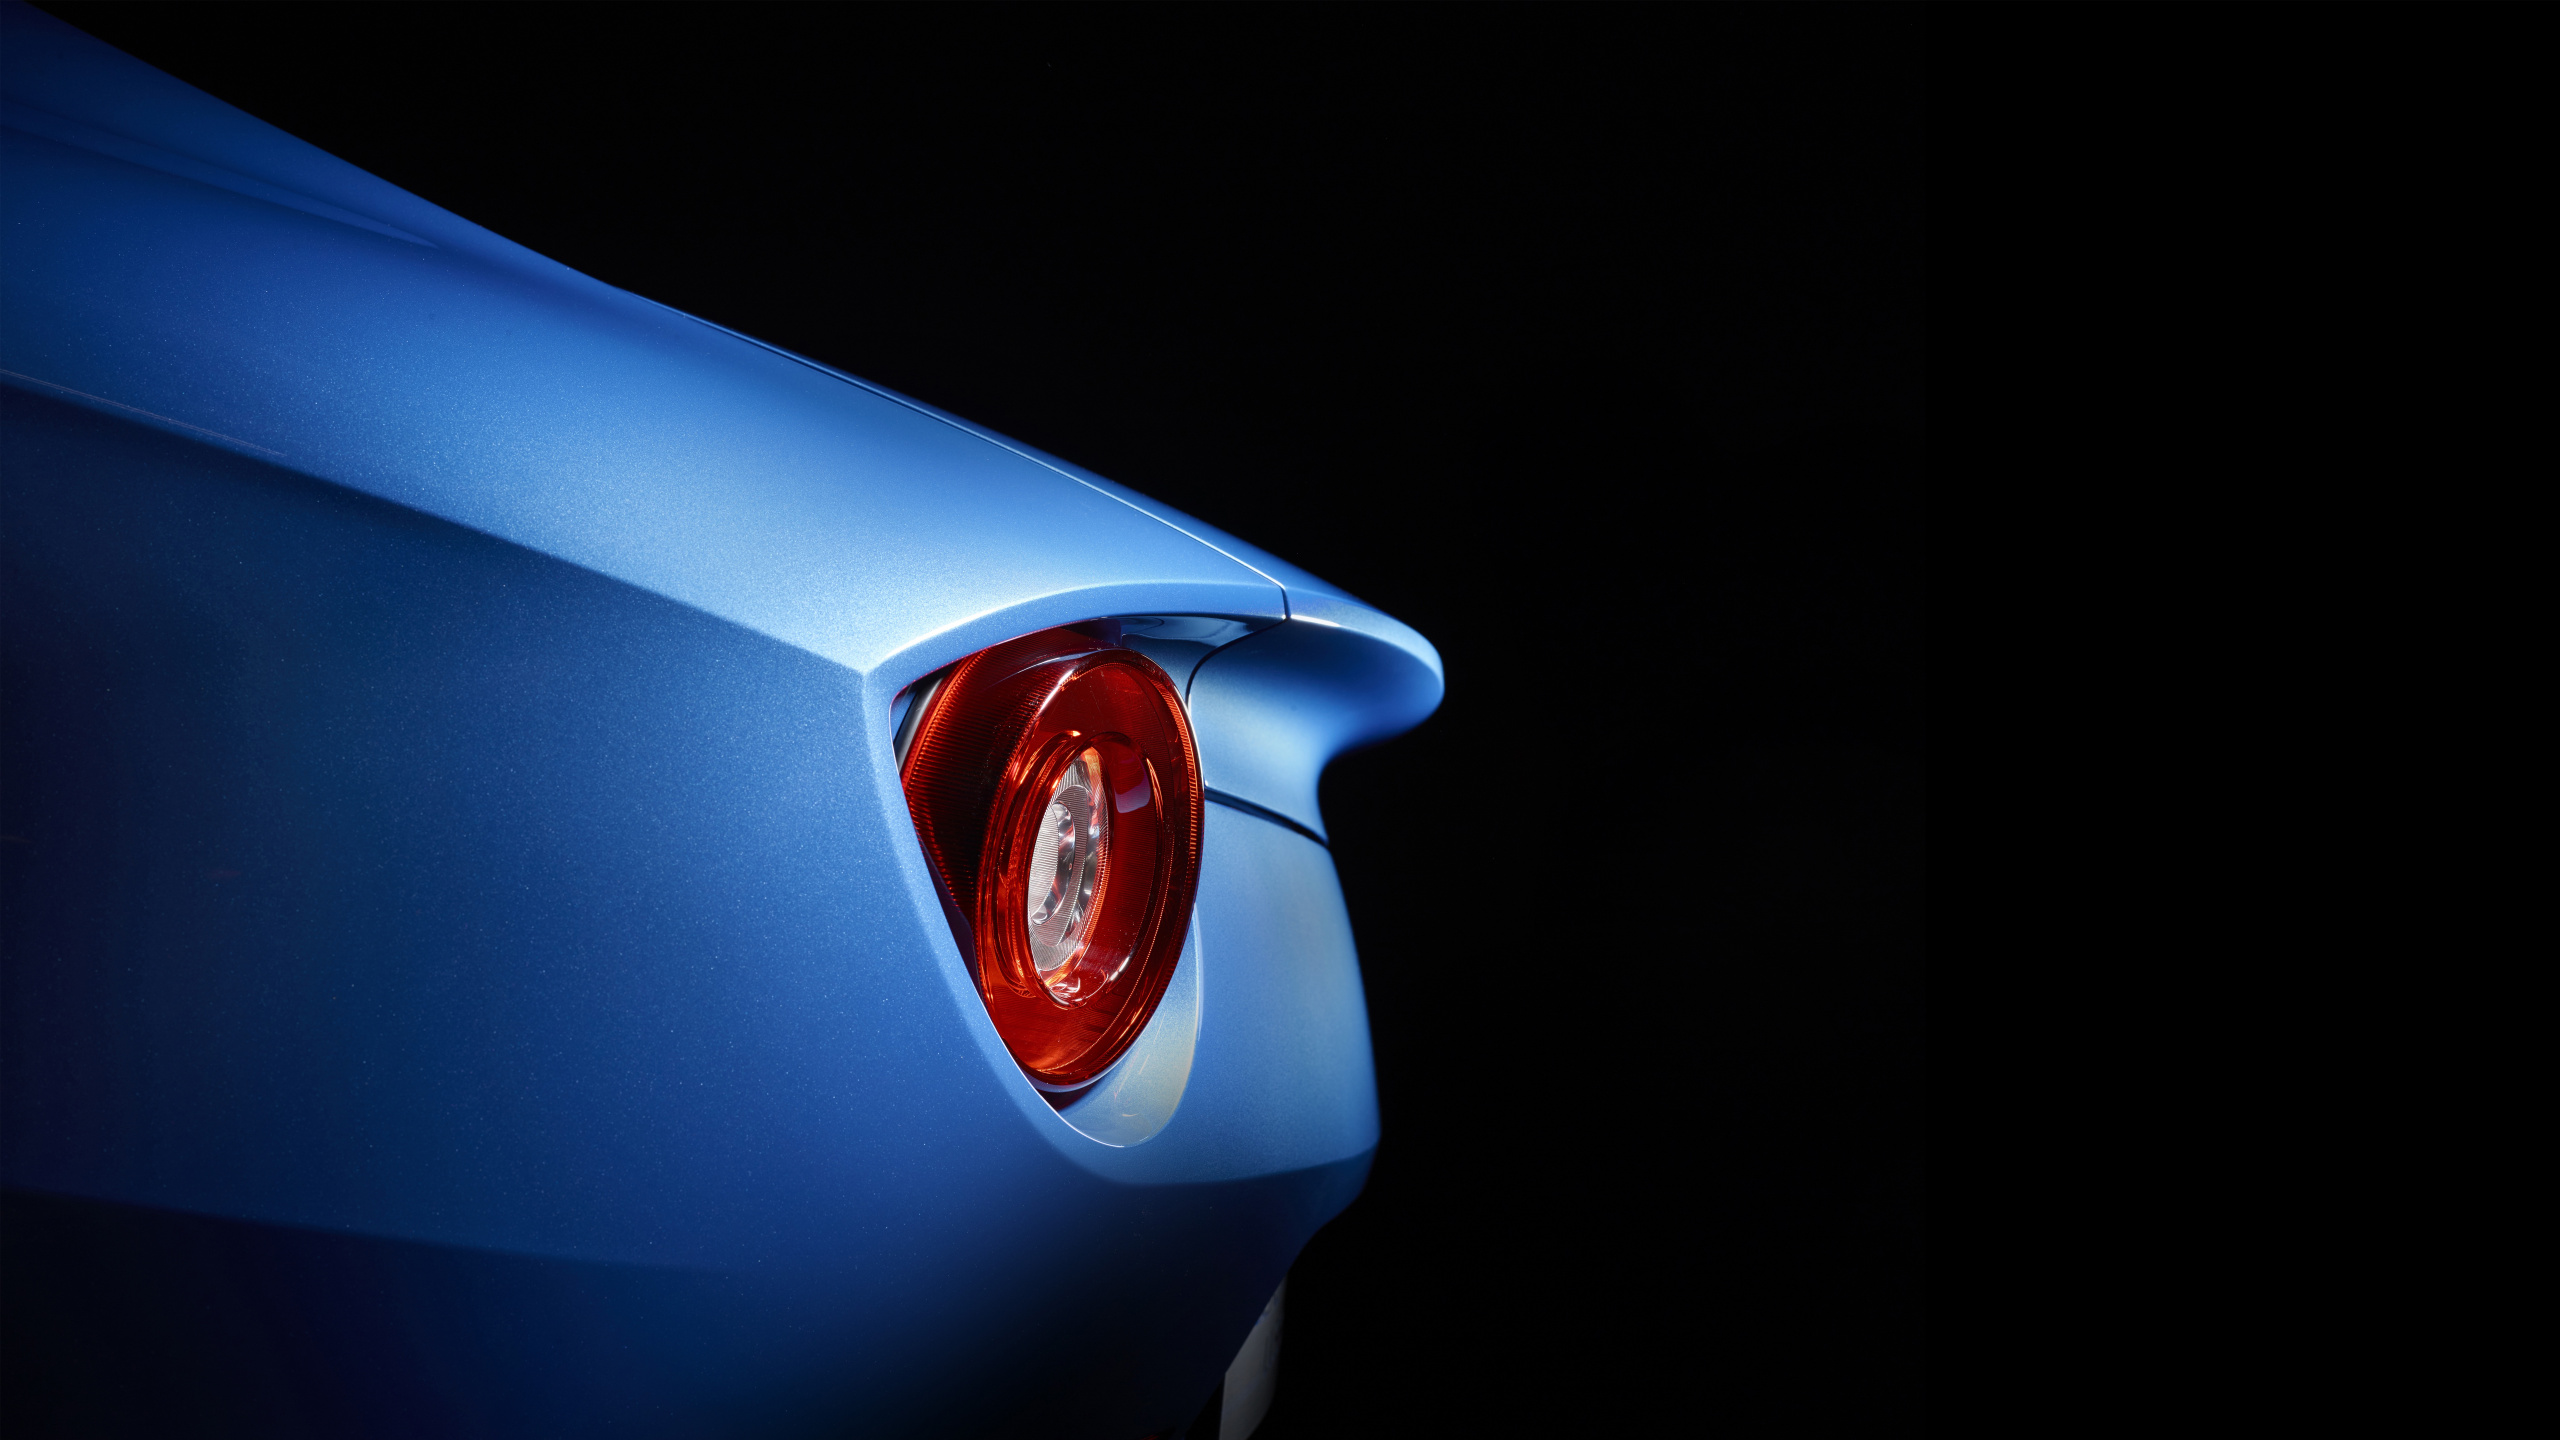 Blaues Auto Mit Rotem Licht. Wallpaper in 2560x1440 Resolution